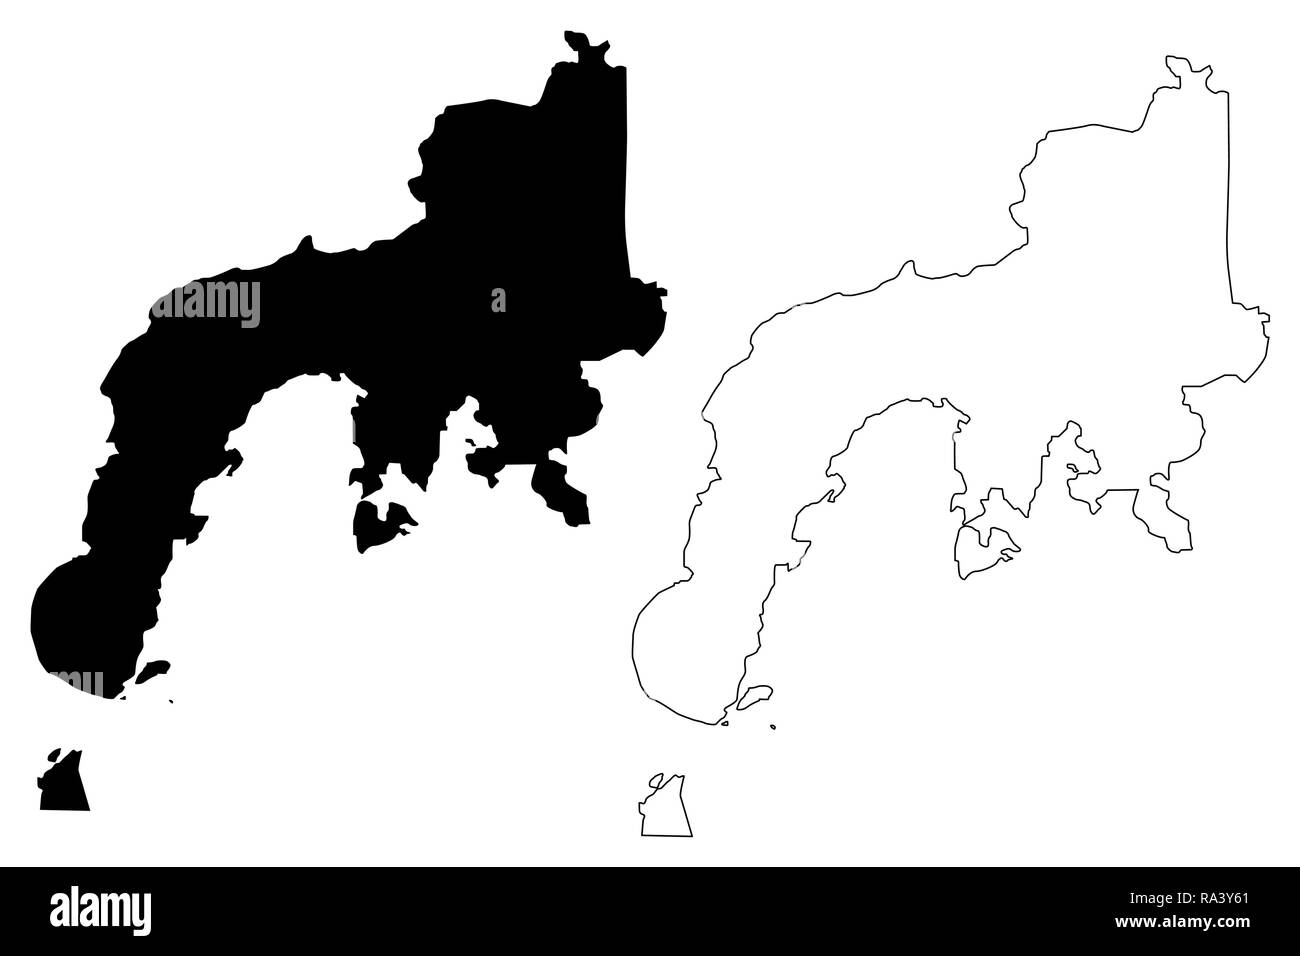 Zamboanga Peninsula Region (Regionen und Provinzen der Philippinen, die Republik der Philippinen) Karte Vektor-illustration, kritzeln Skizze Western Mi Stock Vektor